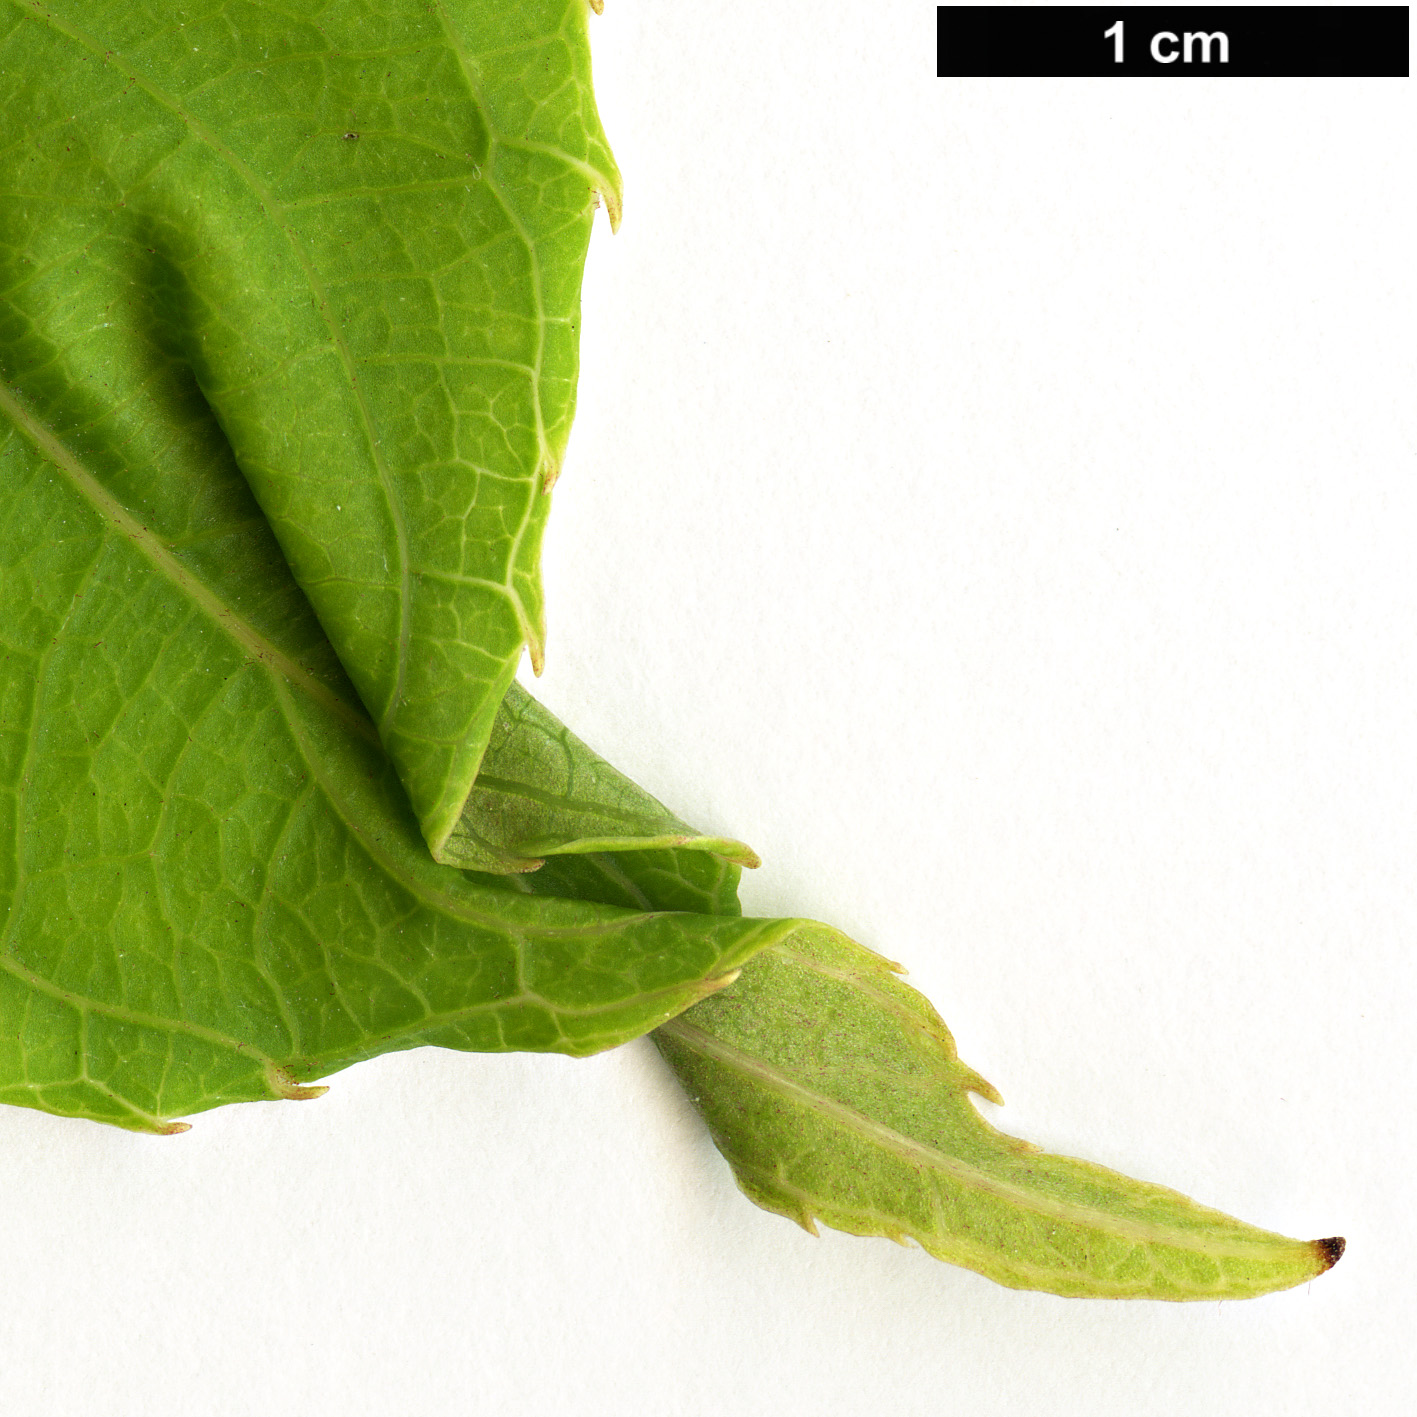 High resolution image: Family: Actinidiaceae - Genus: Actinidia - Taxon: arguta - SpeciesSub: var. purpurea